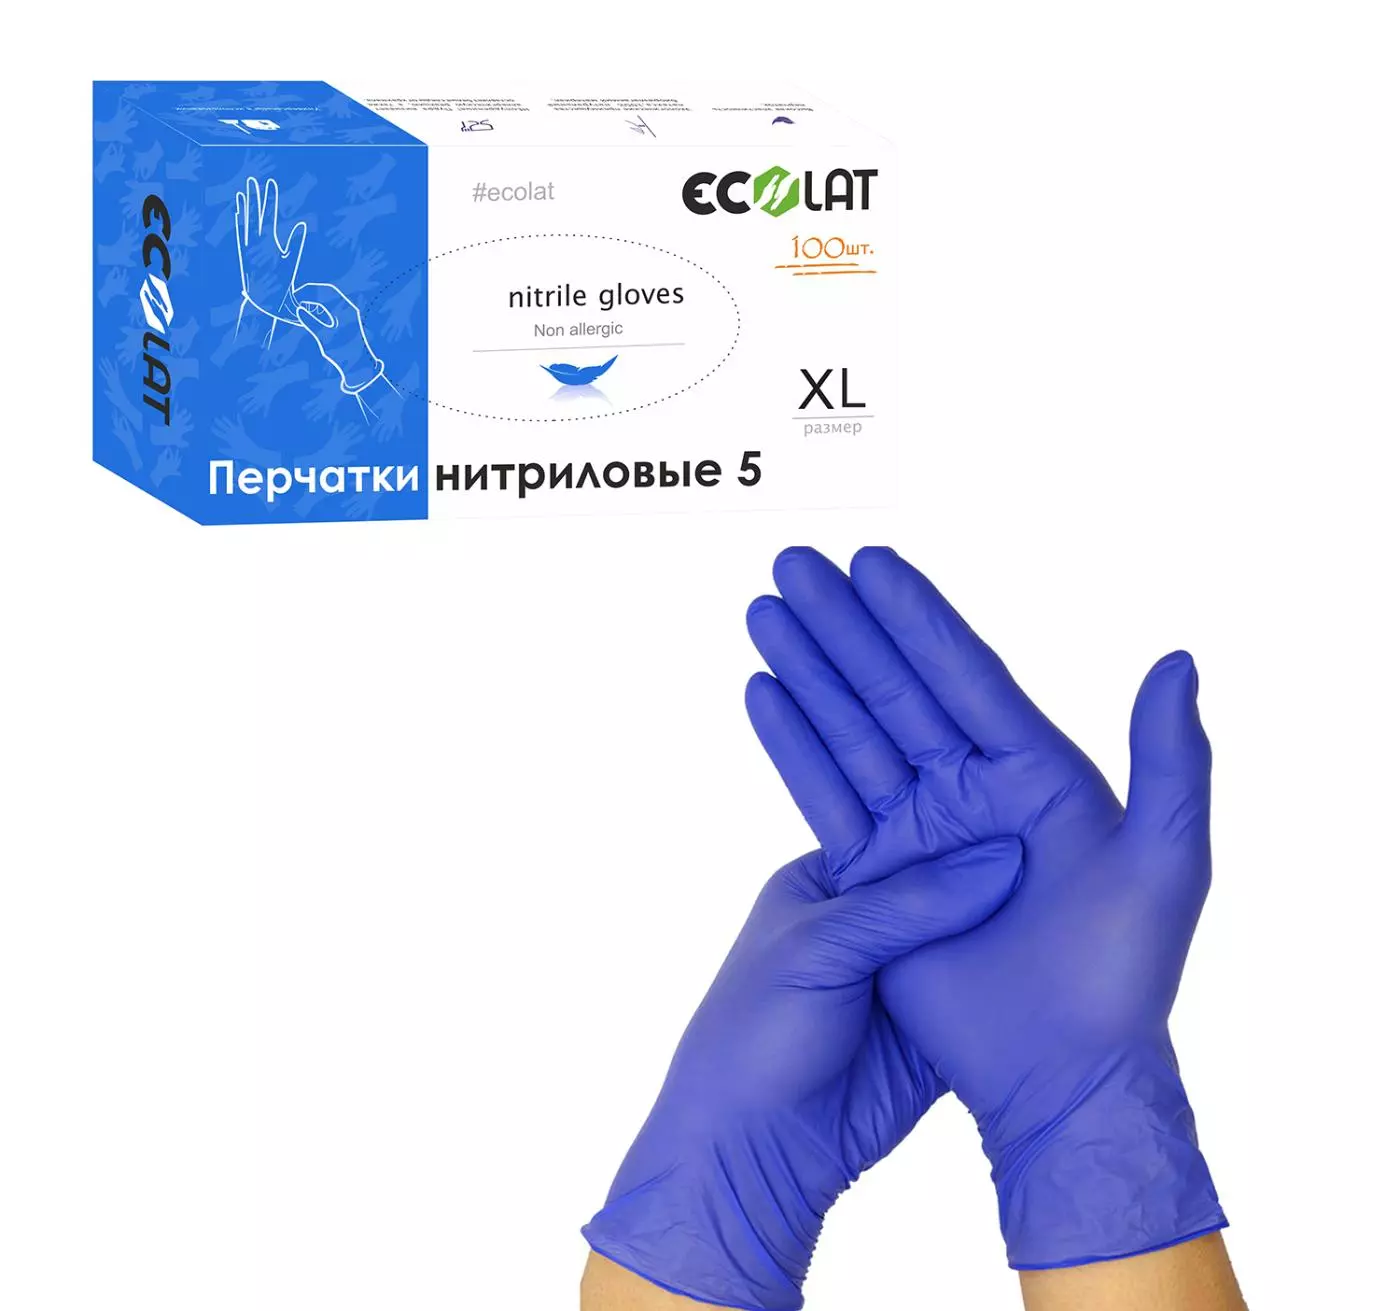 Нитриловые перчатки EcoLat 5, 100 шт./уп. размер XL, 3044/XL